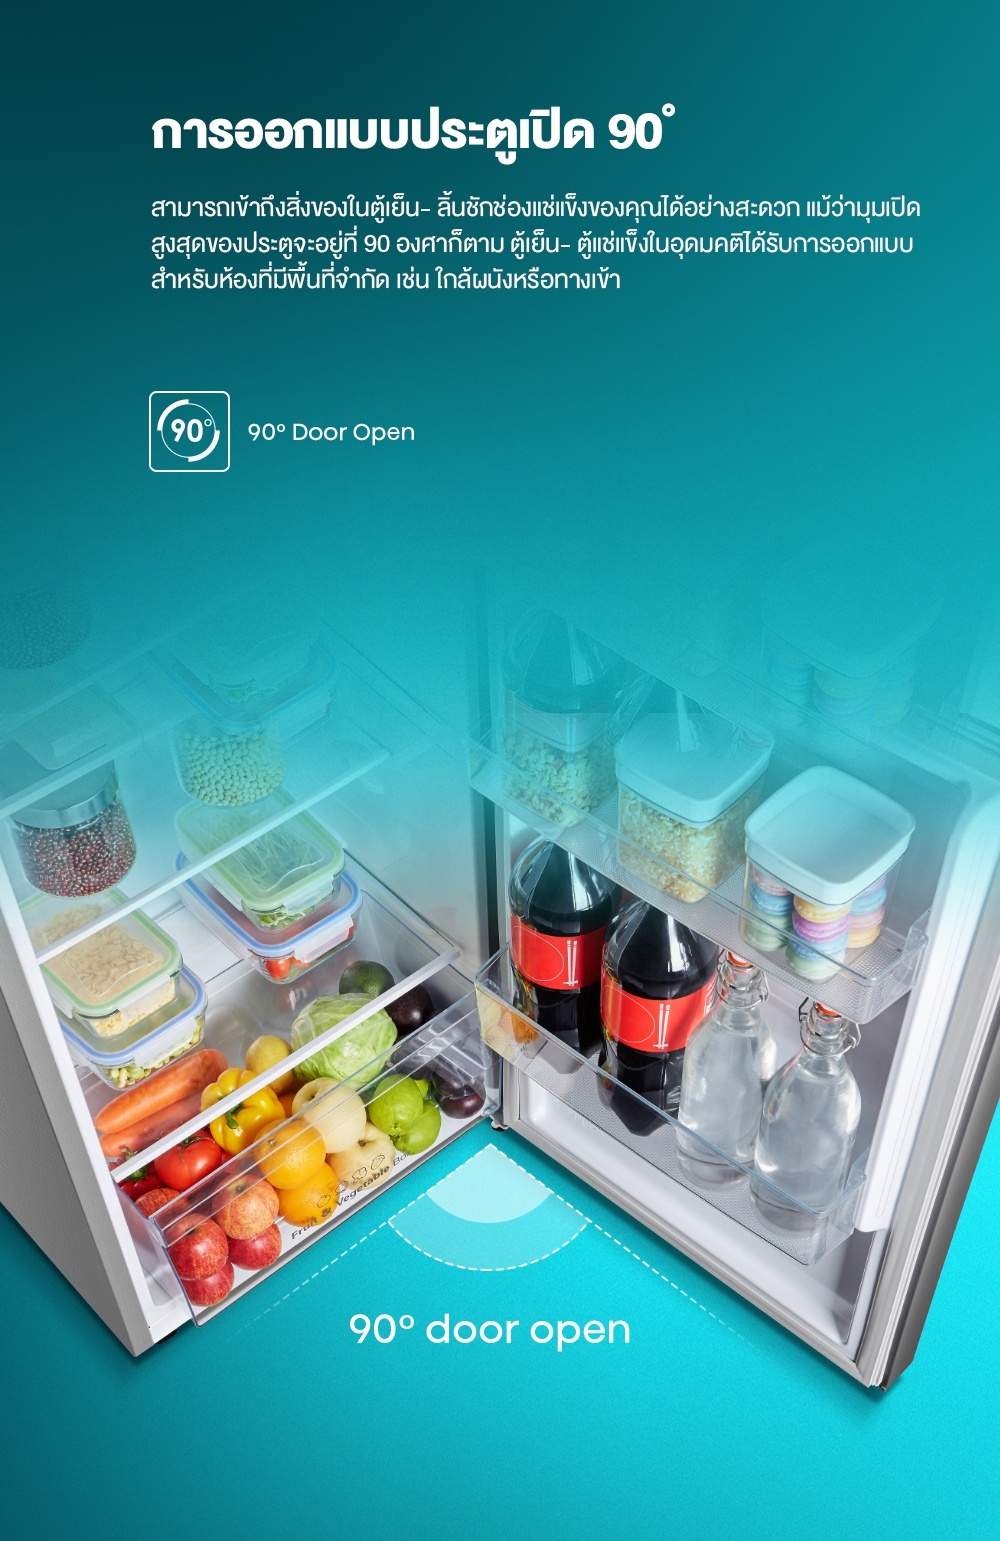 รายละเอียดเพิ่มเติมเกี่ยวกับ Hisense ตู้เย็น 2 ประตู : 7.5Q / 212 ลิตร รุ่น RT266N4TGN